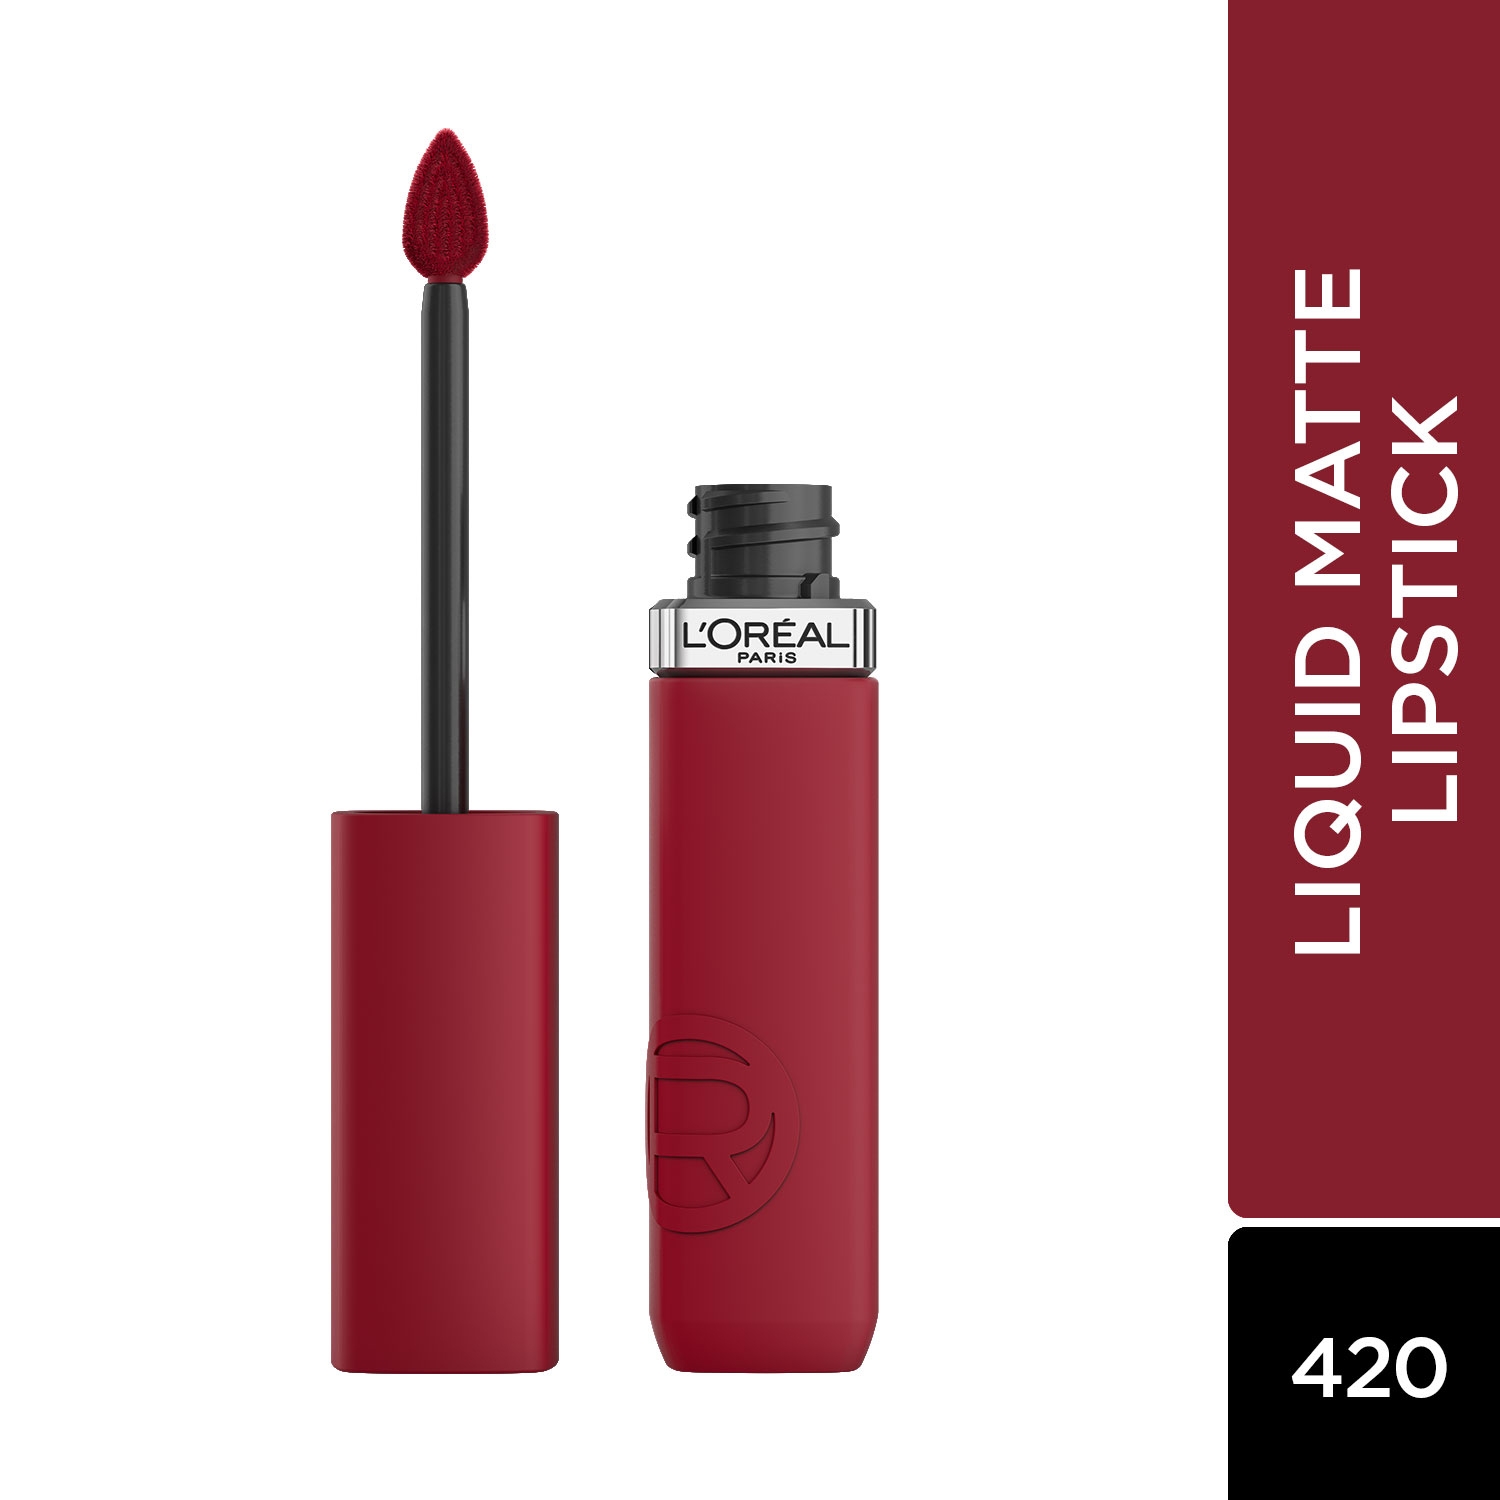 L'Oreal Paris | L'Oreal Paris Infallible Matte Resistance Liquid Lipstick - 420 Le Rouge Paris (5ml)